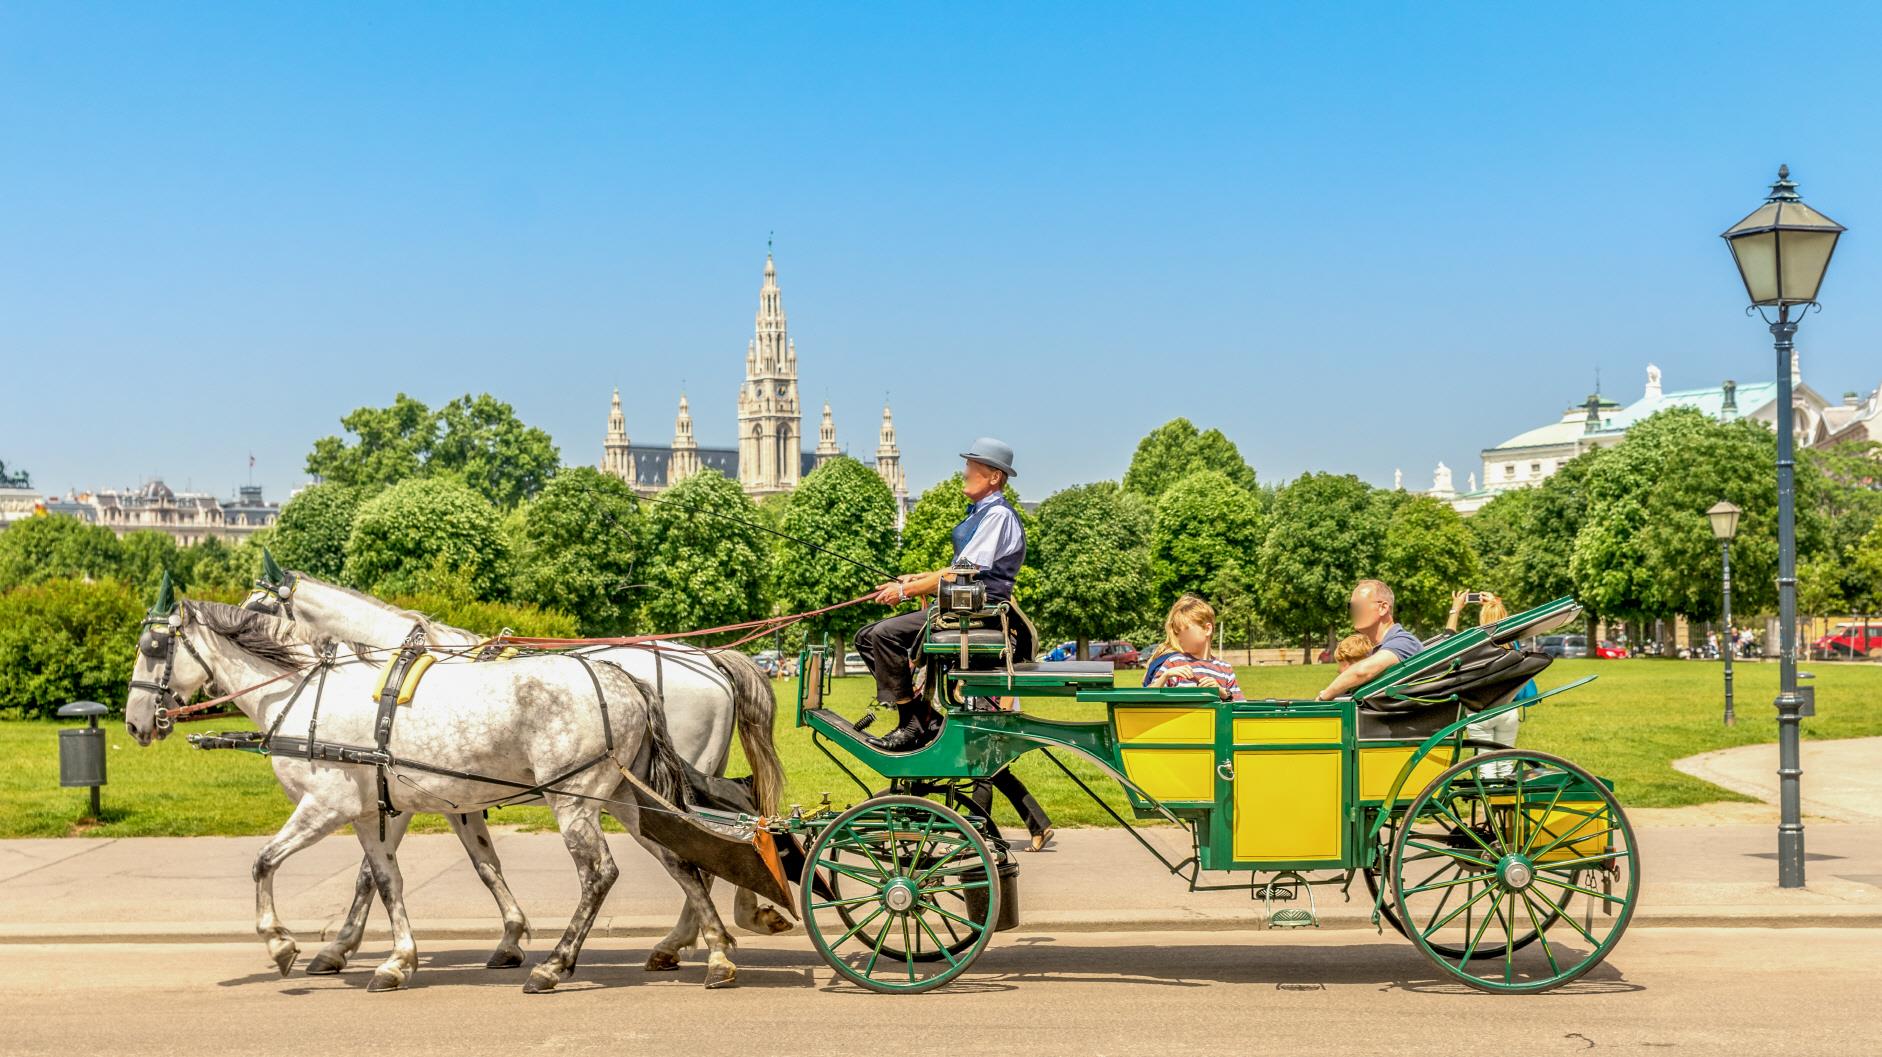 비엔나 왕궁마차 체험  Vienna royal carriage tour